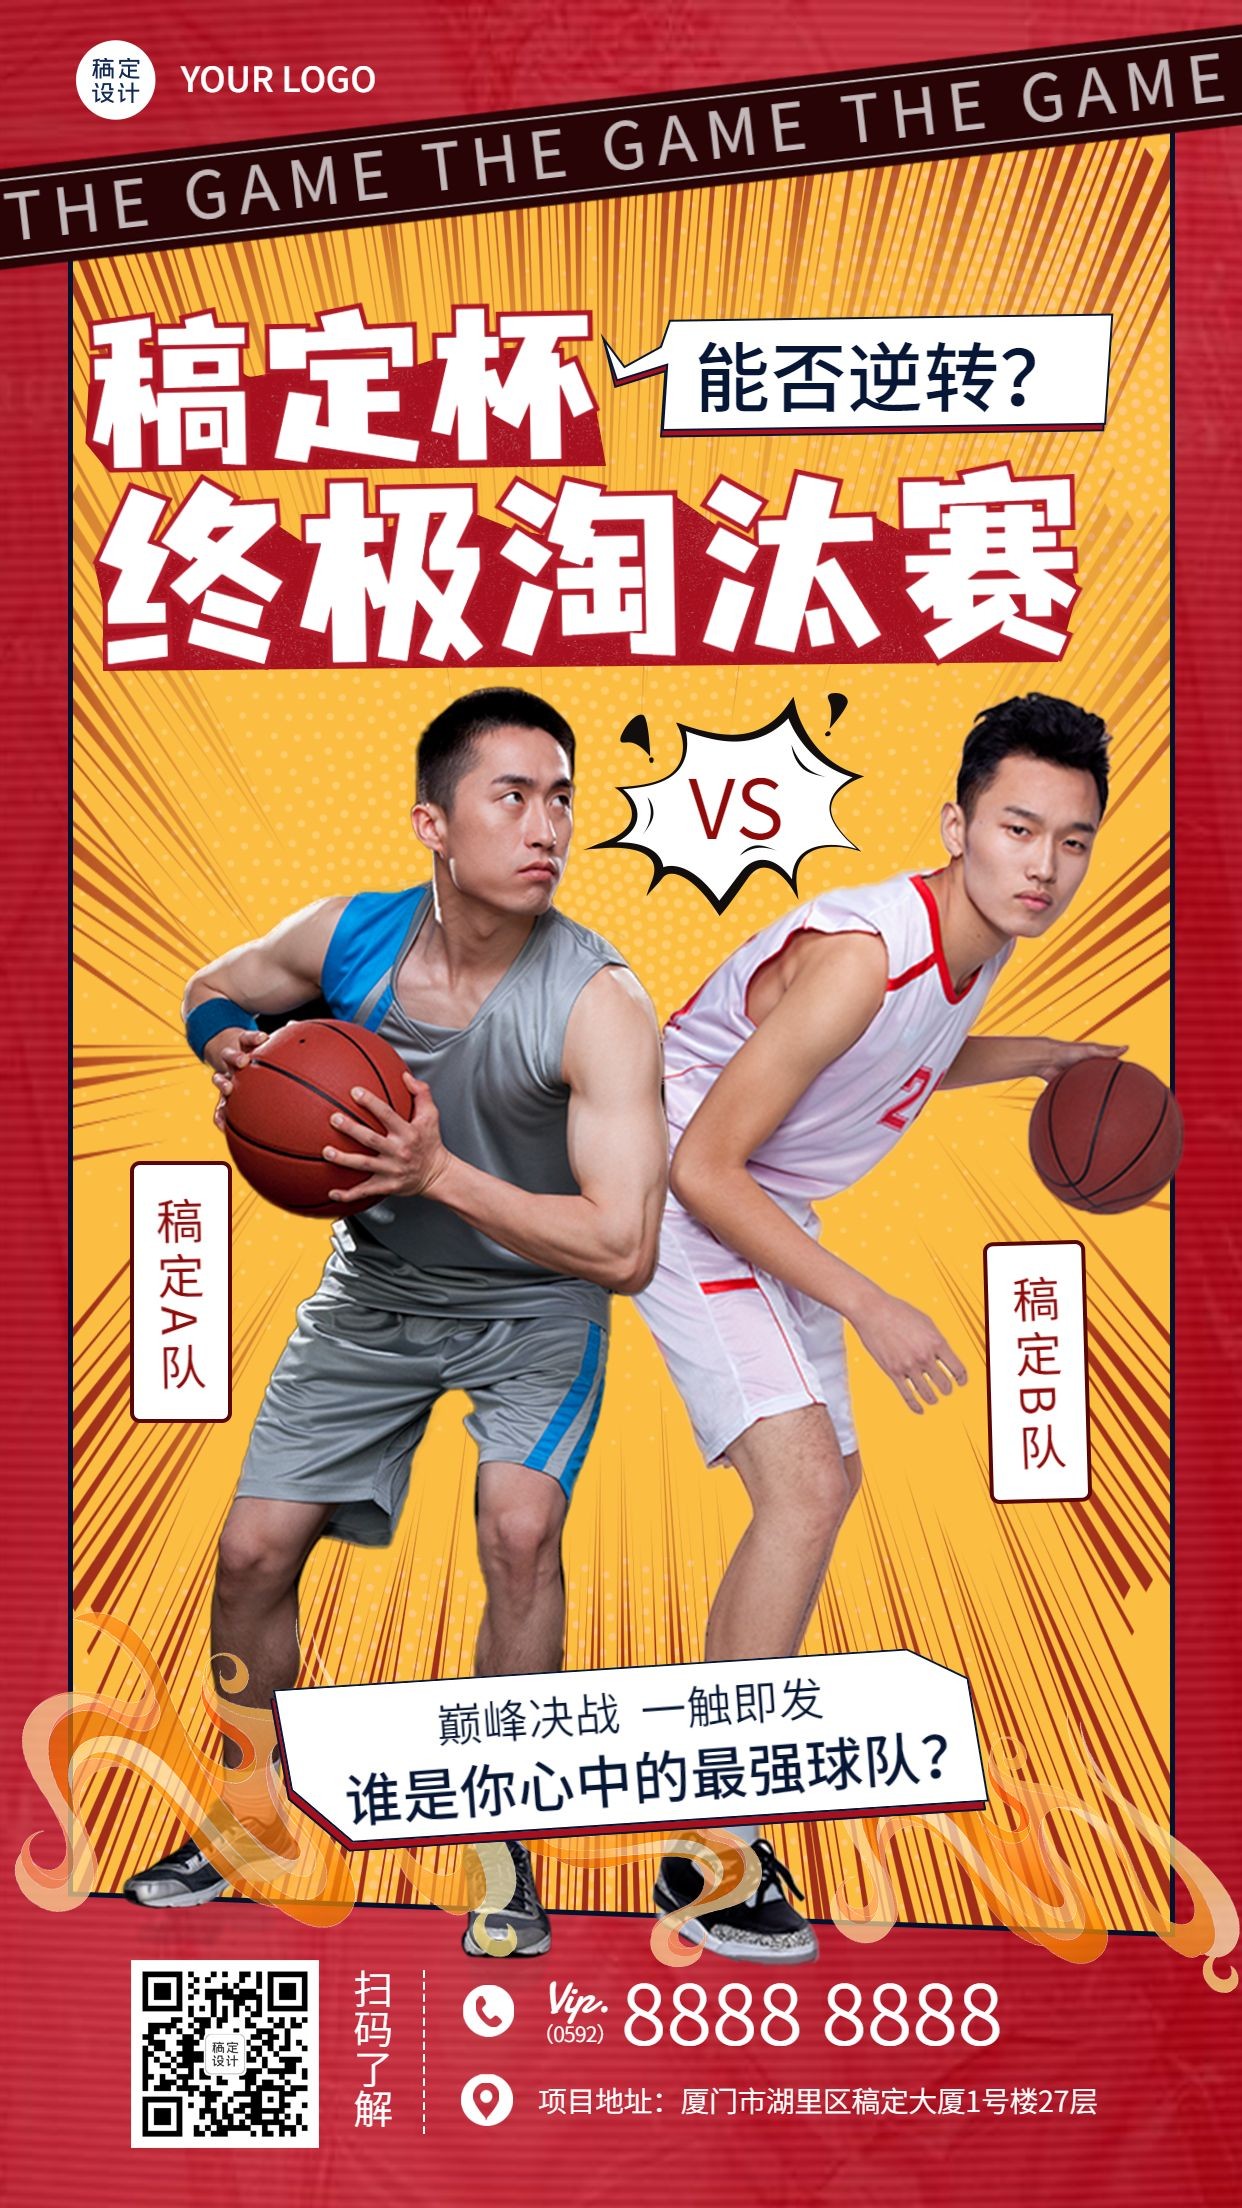 篮球比赛球队PK热火手机海报预览效果